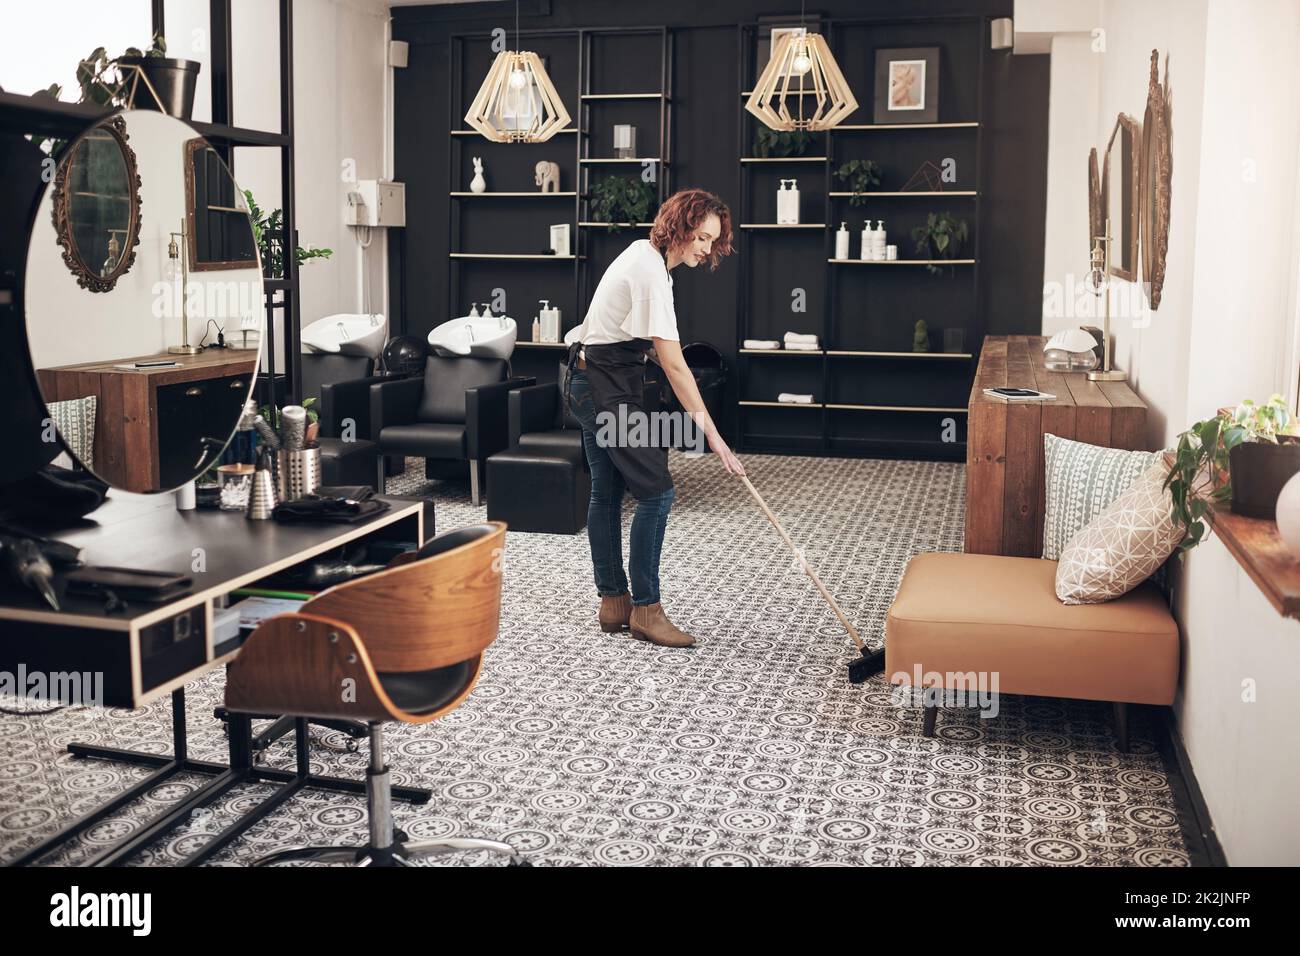 Un espace propre est un espace heureux. Photo d'un coiffeur qui balaie le salon. Banque D'Images